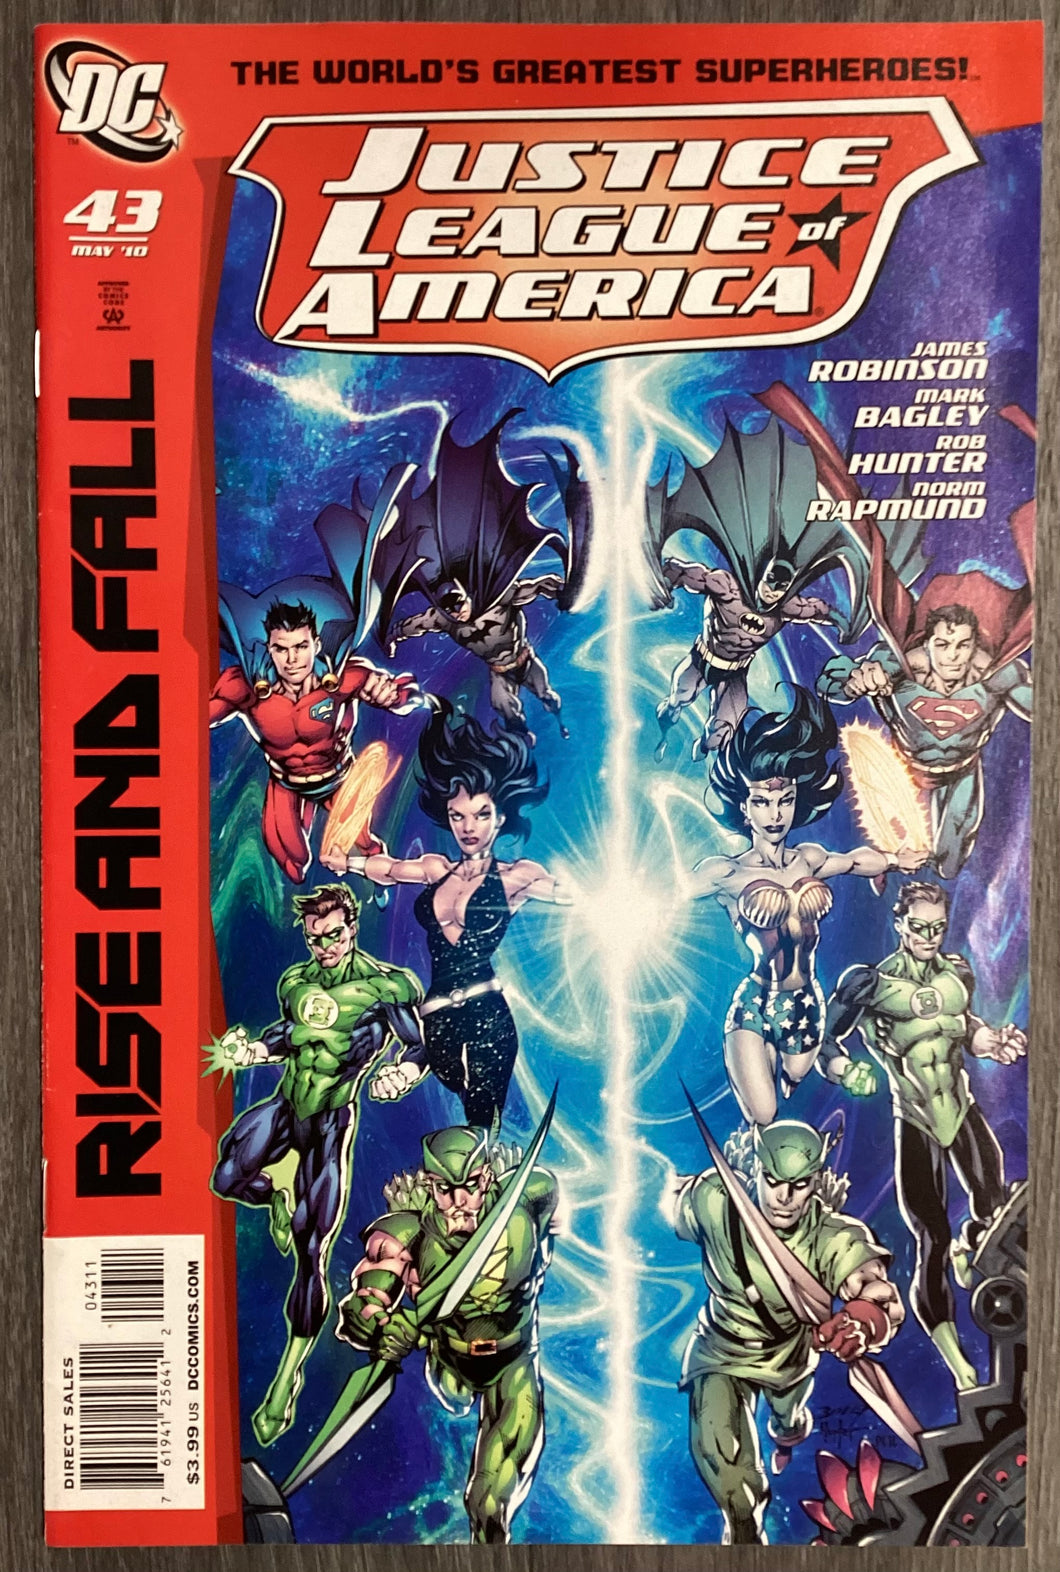 Justice League of America No. #43 2010 DC Comics